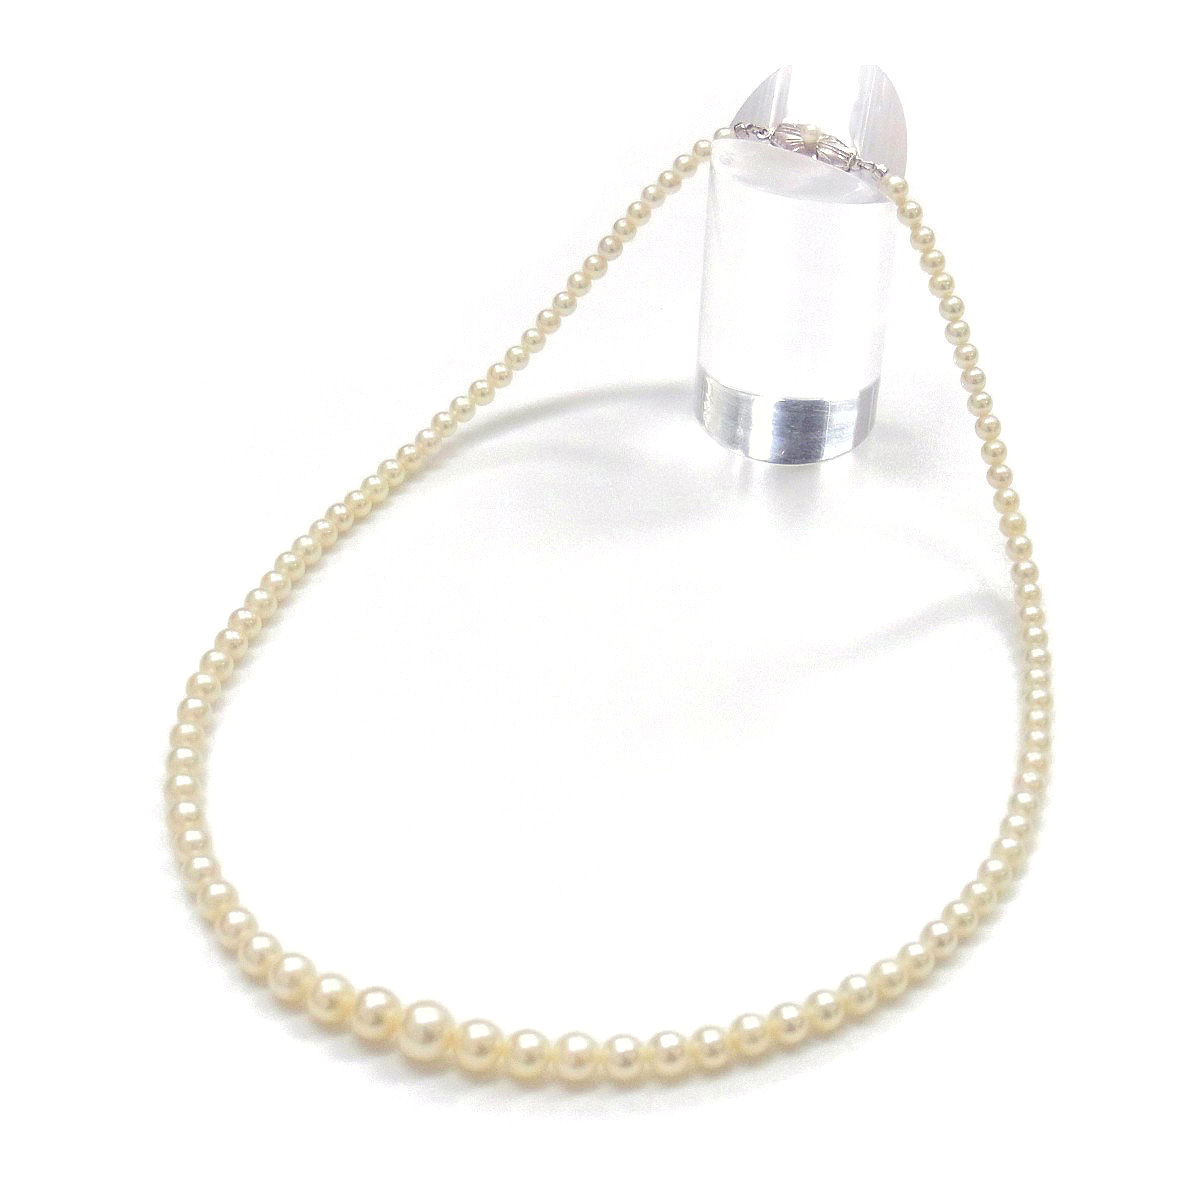 アコヤ真珠ネックレス グラデーションネックレス クリームカラー 3-7mm